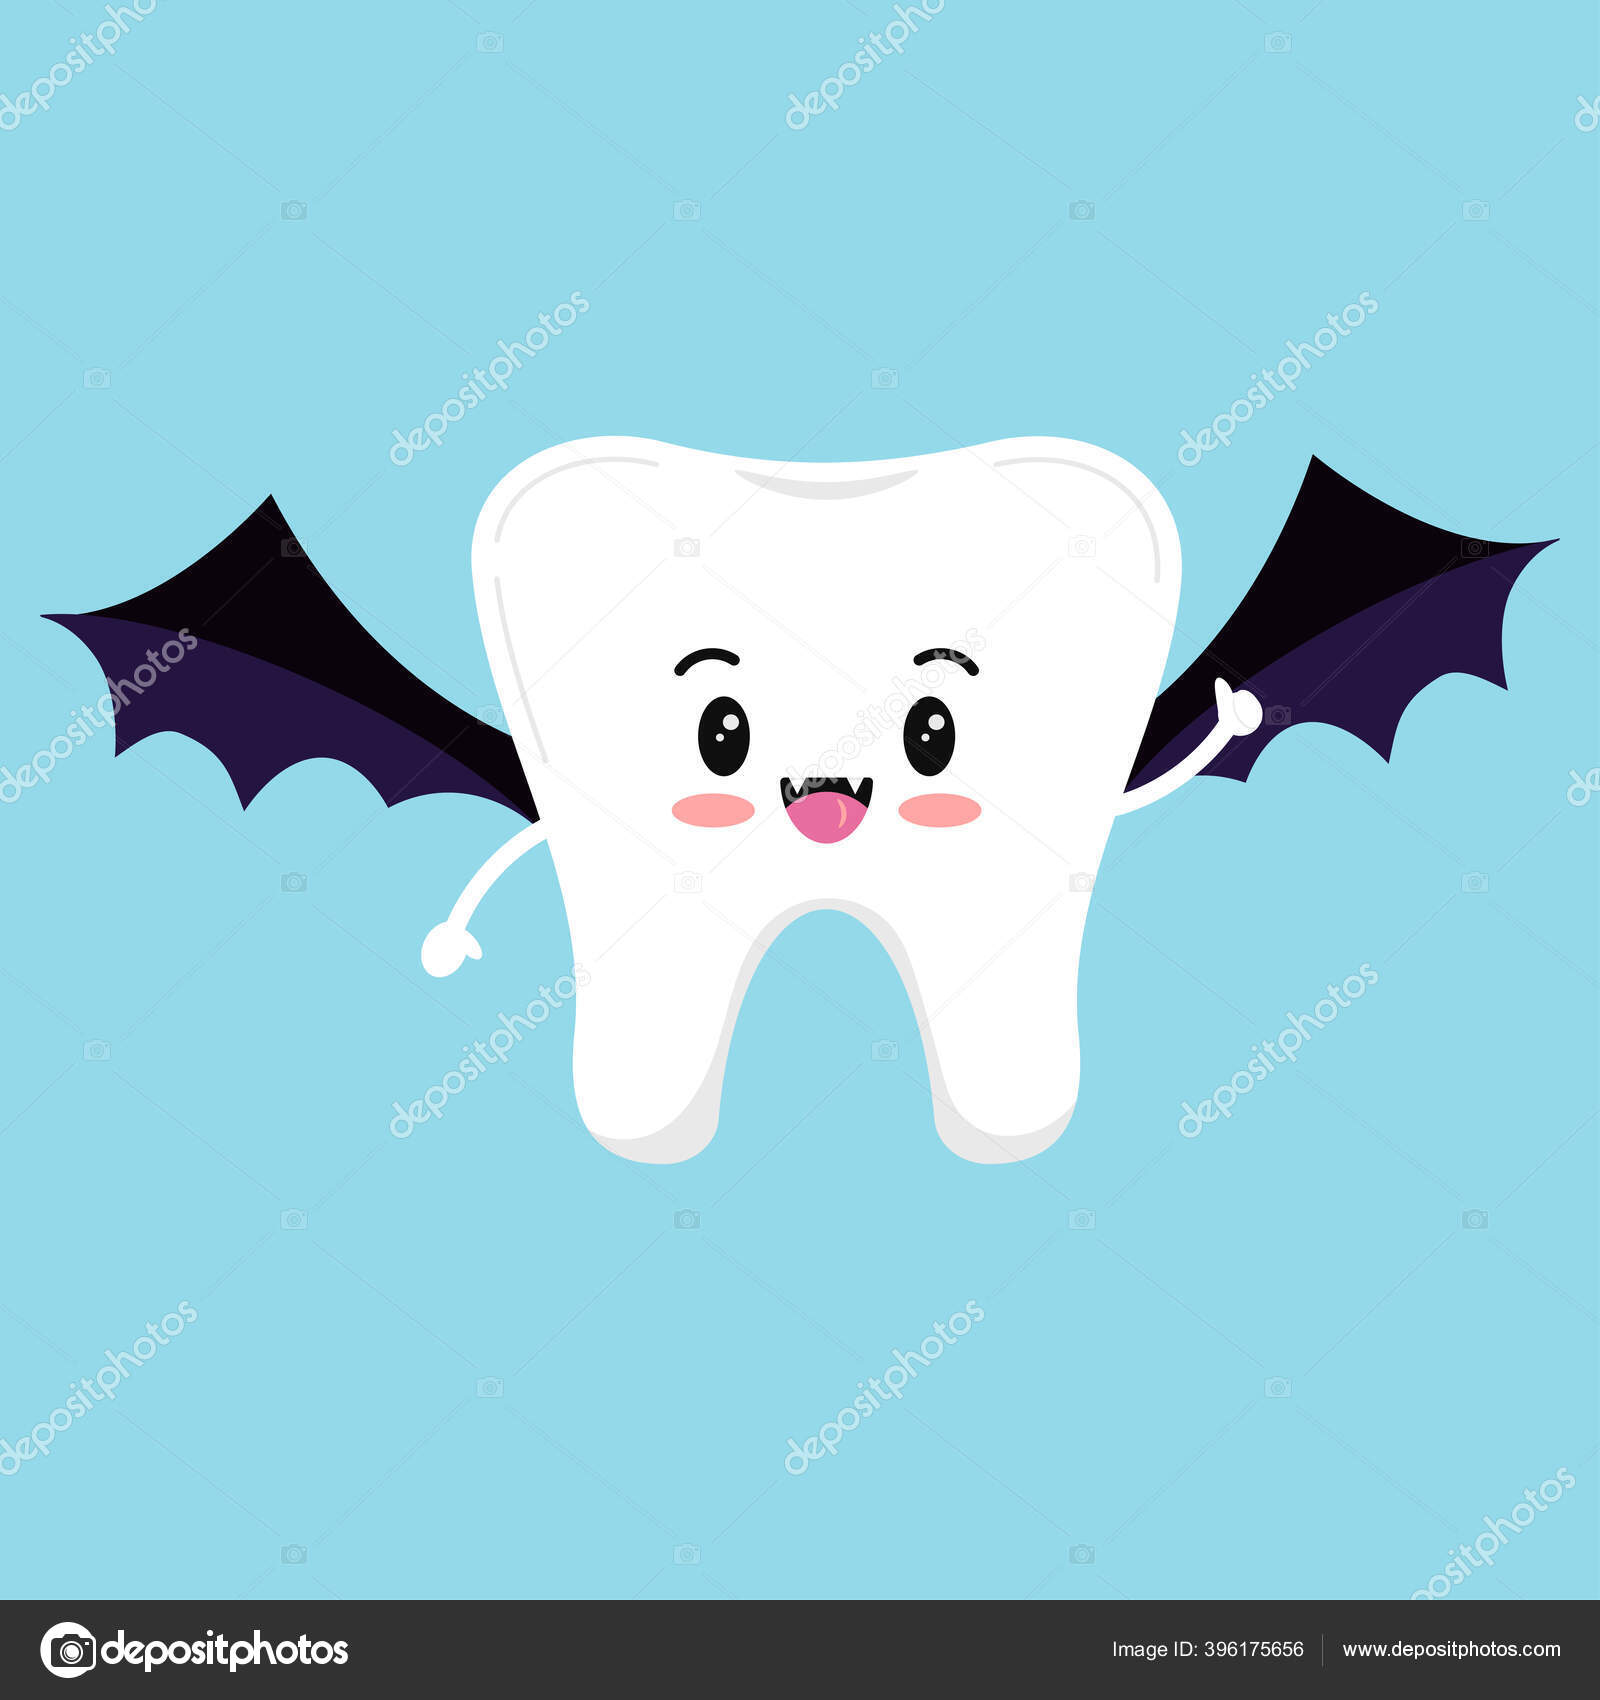 Dentes de vampiro - ícones de médico grátis